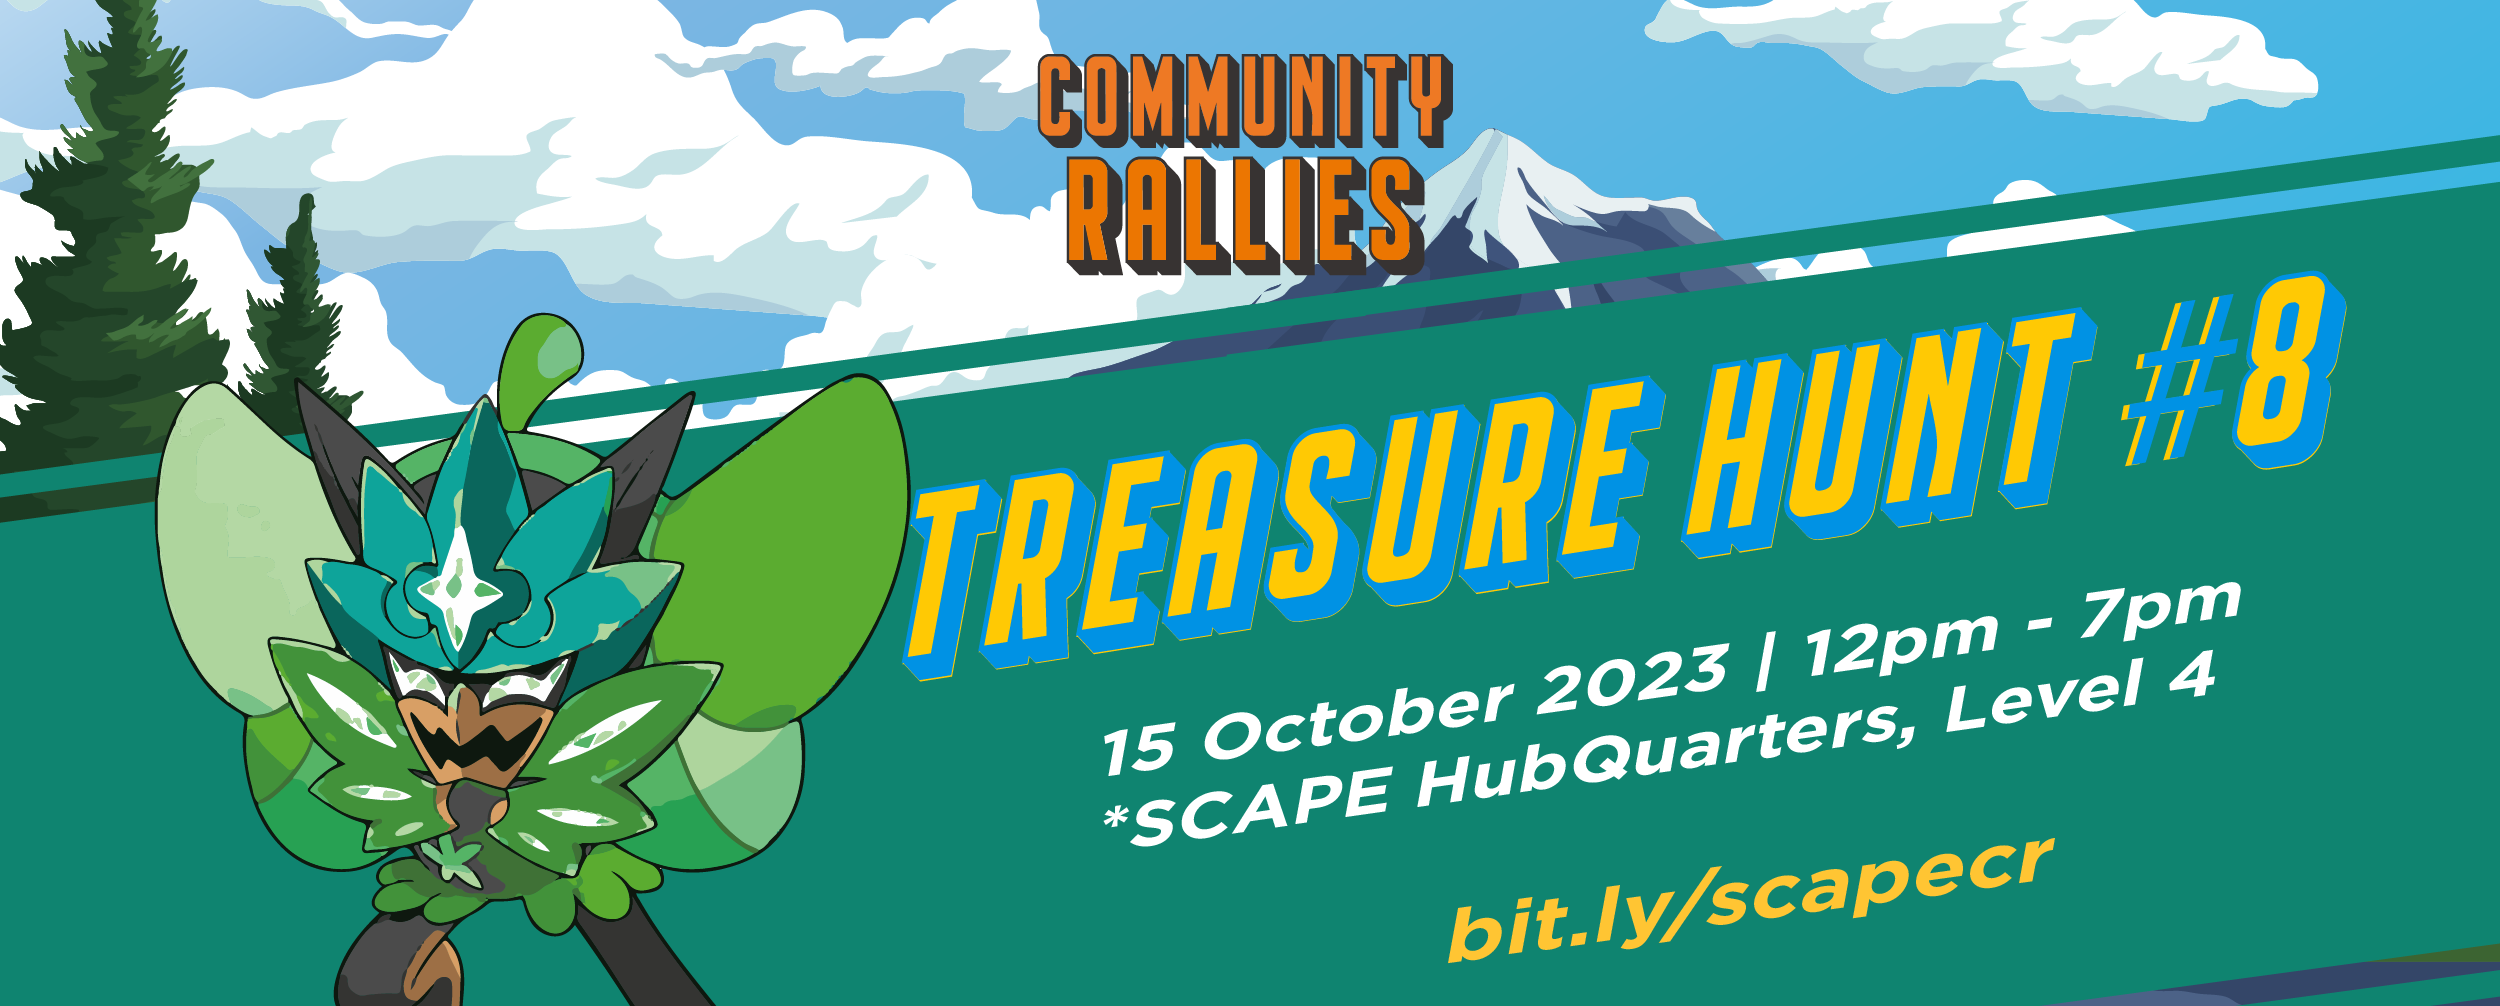 15 Oct Treasure Hunt Edm